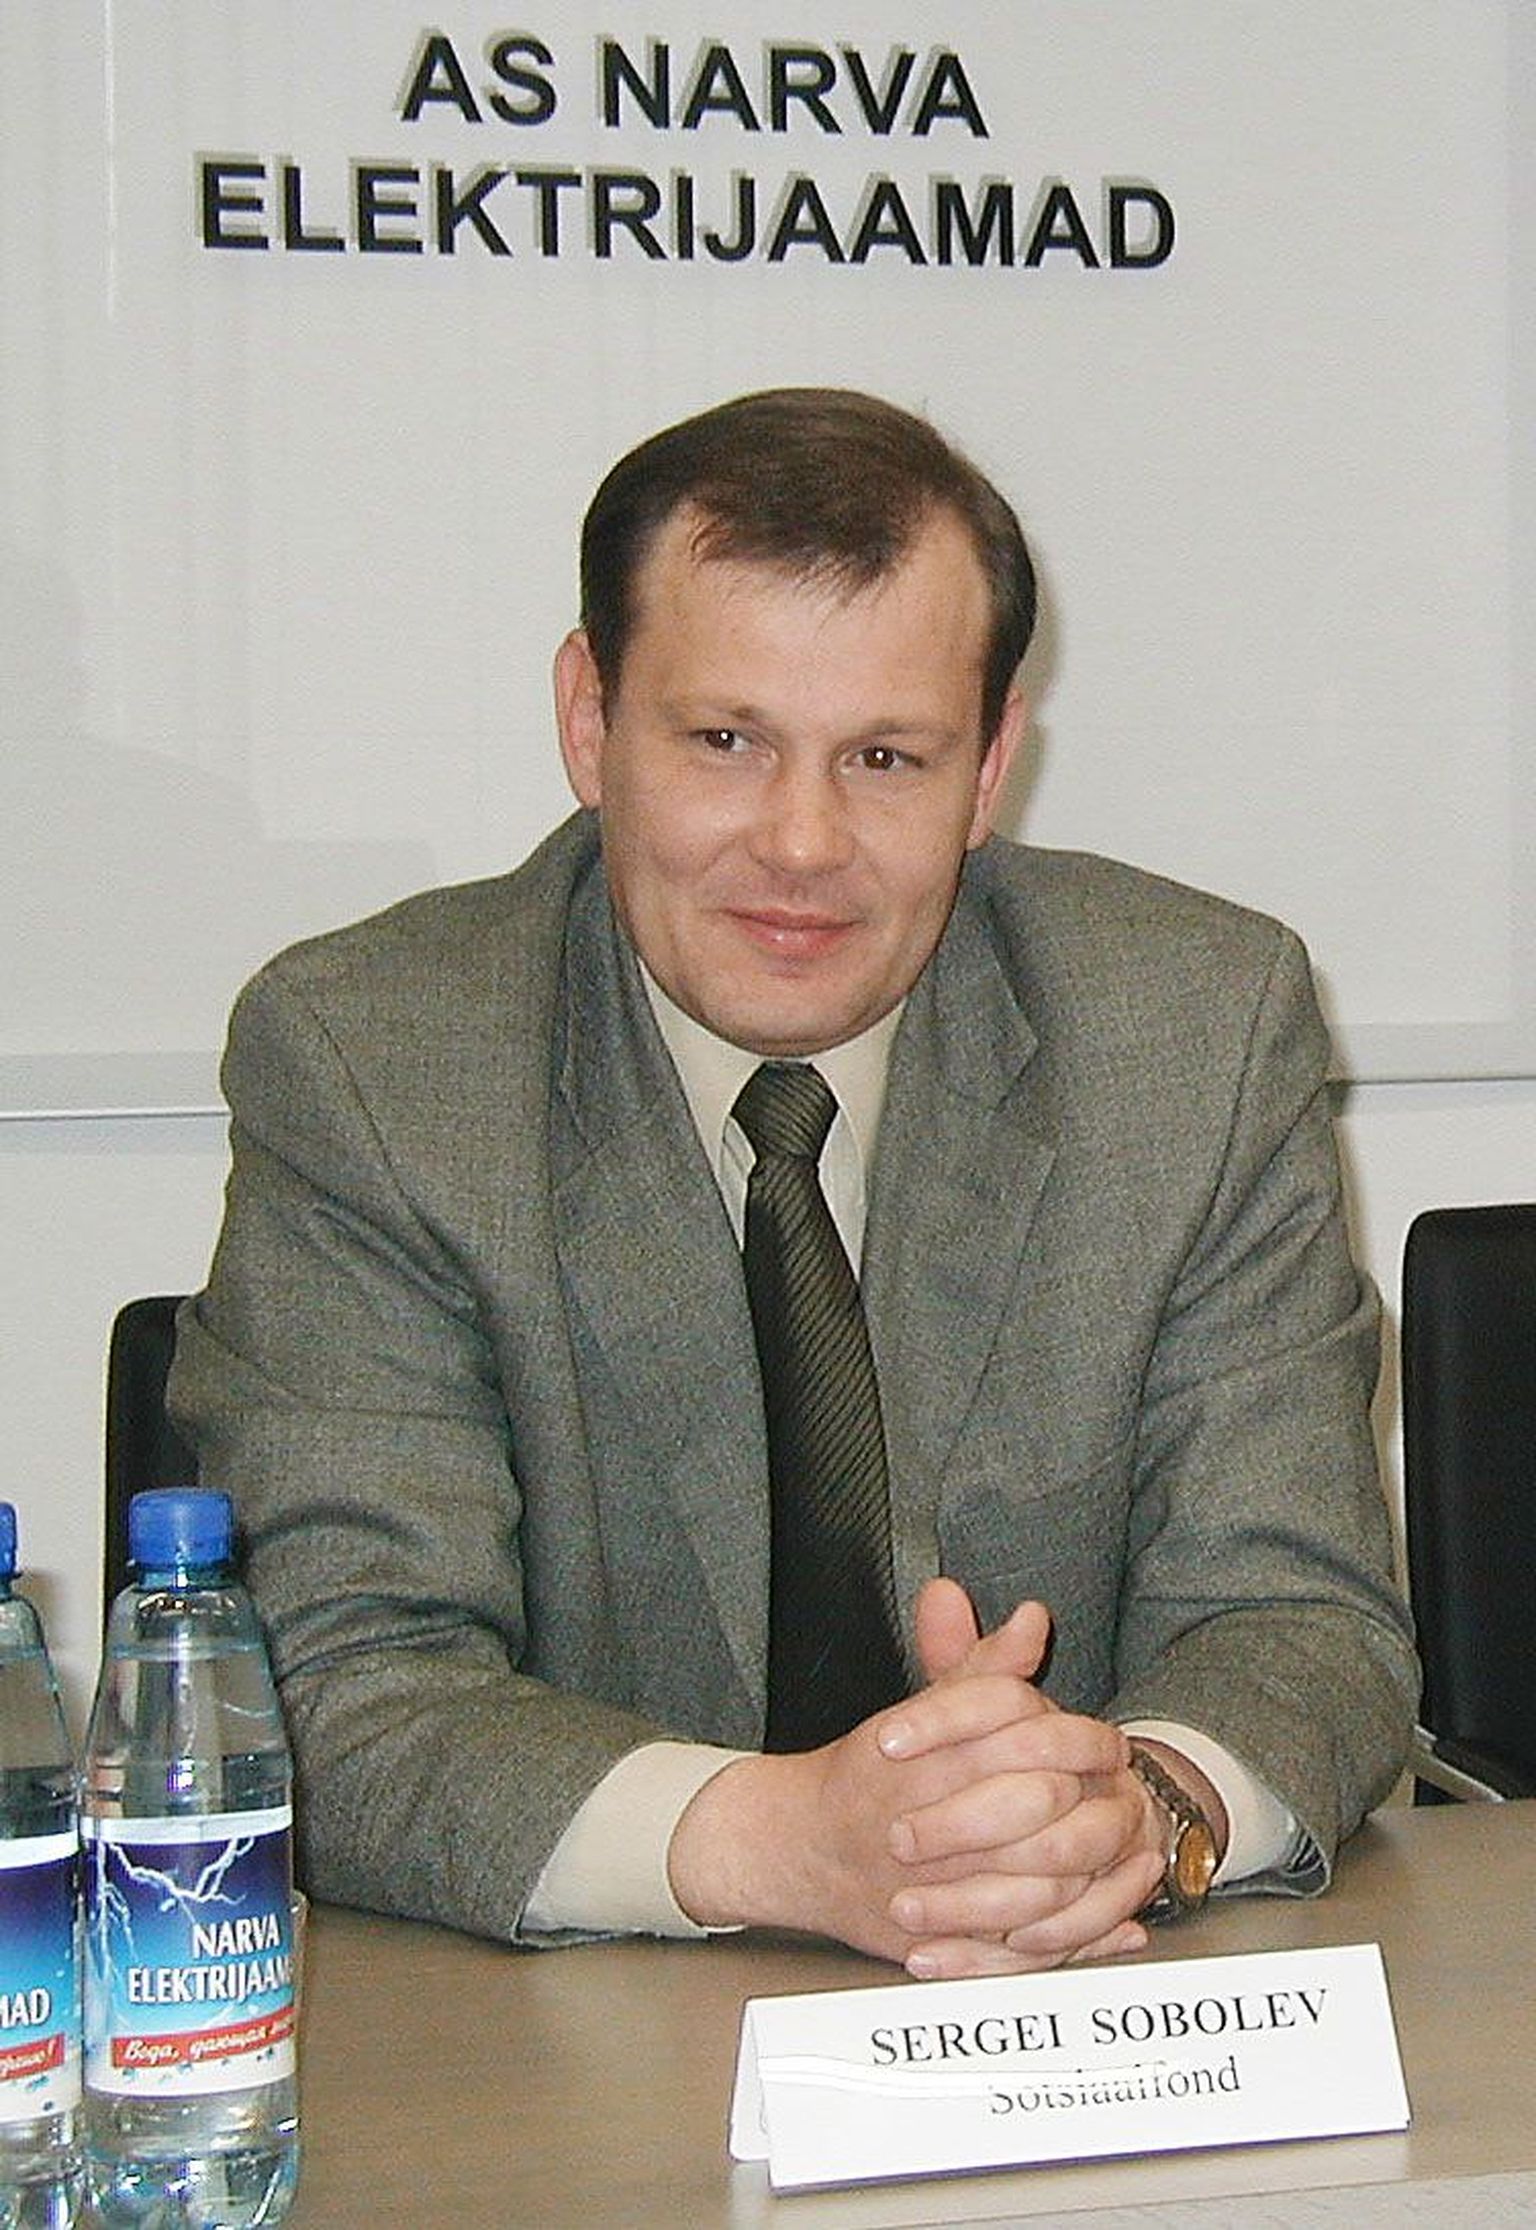 Сергей Соболев был вынужден уйти с поста члена правления AS Narva Soojusvõrk после обвинительного приговора за нетрезвое вождение.